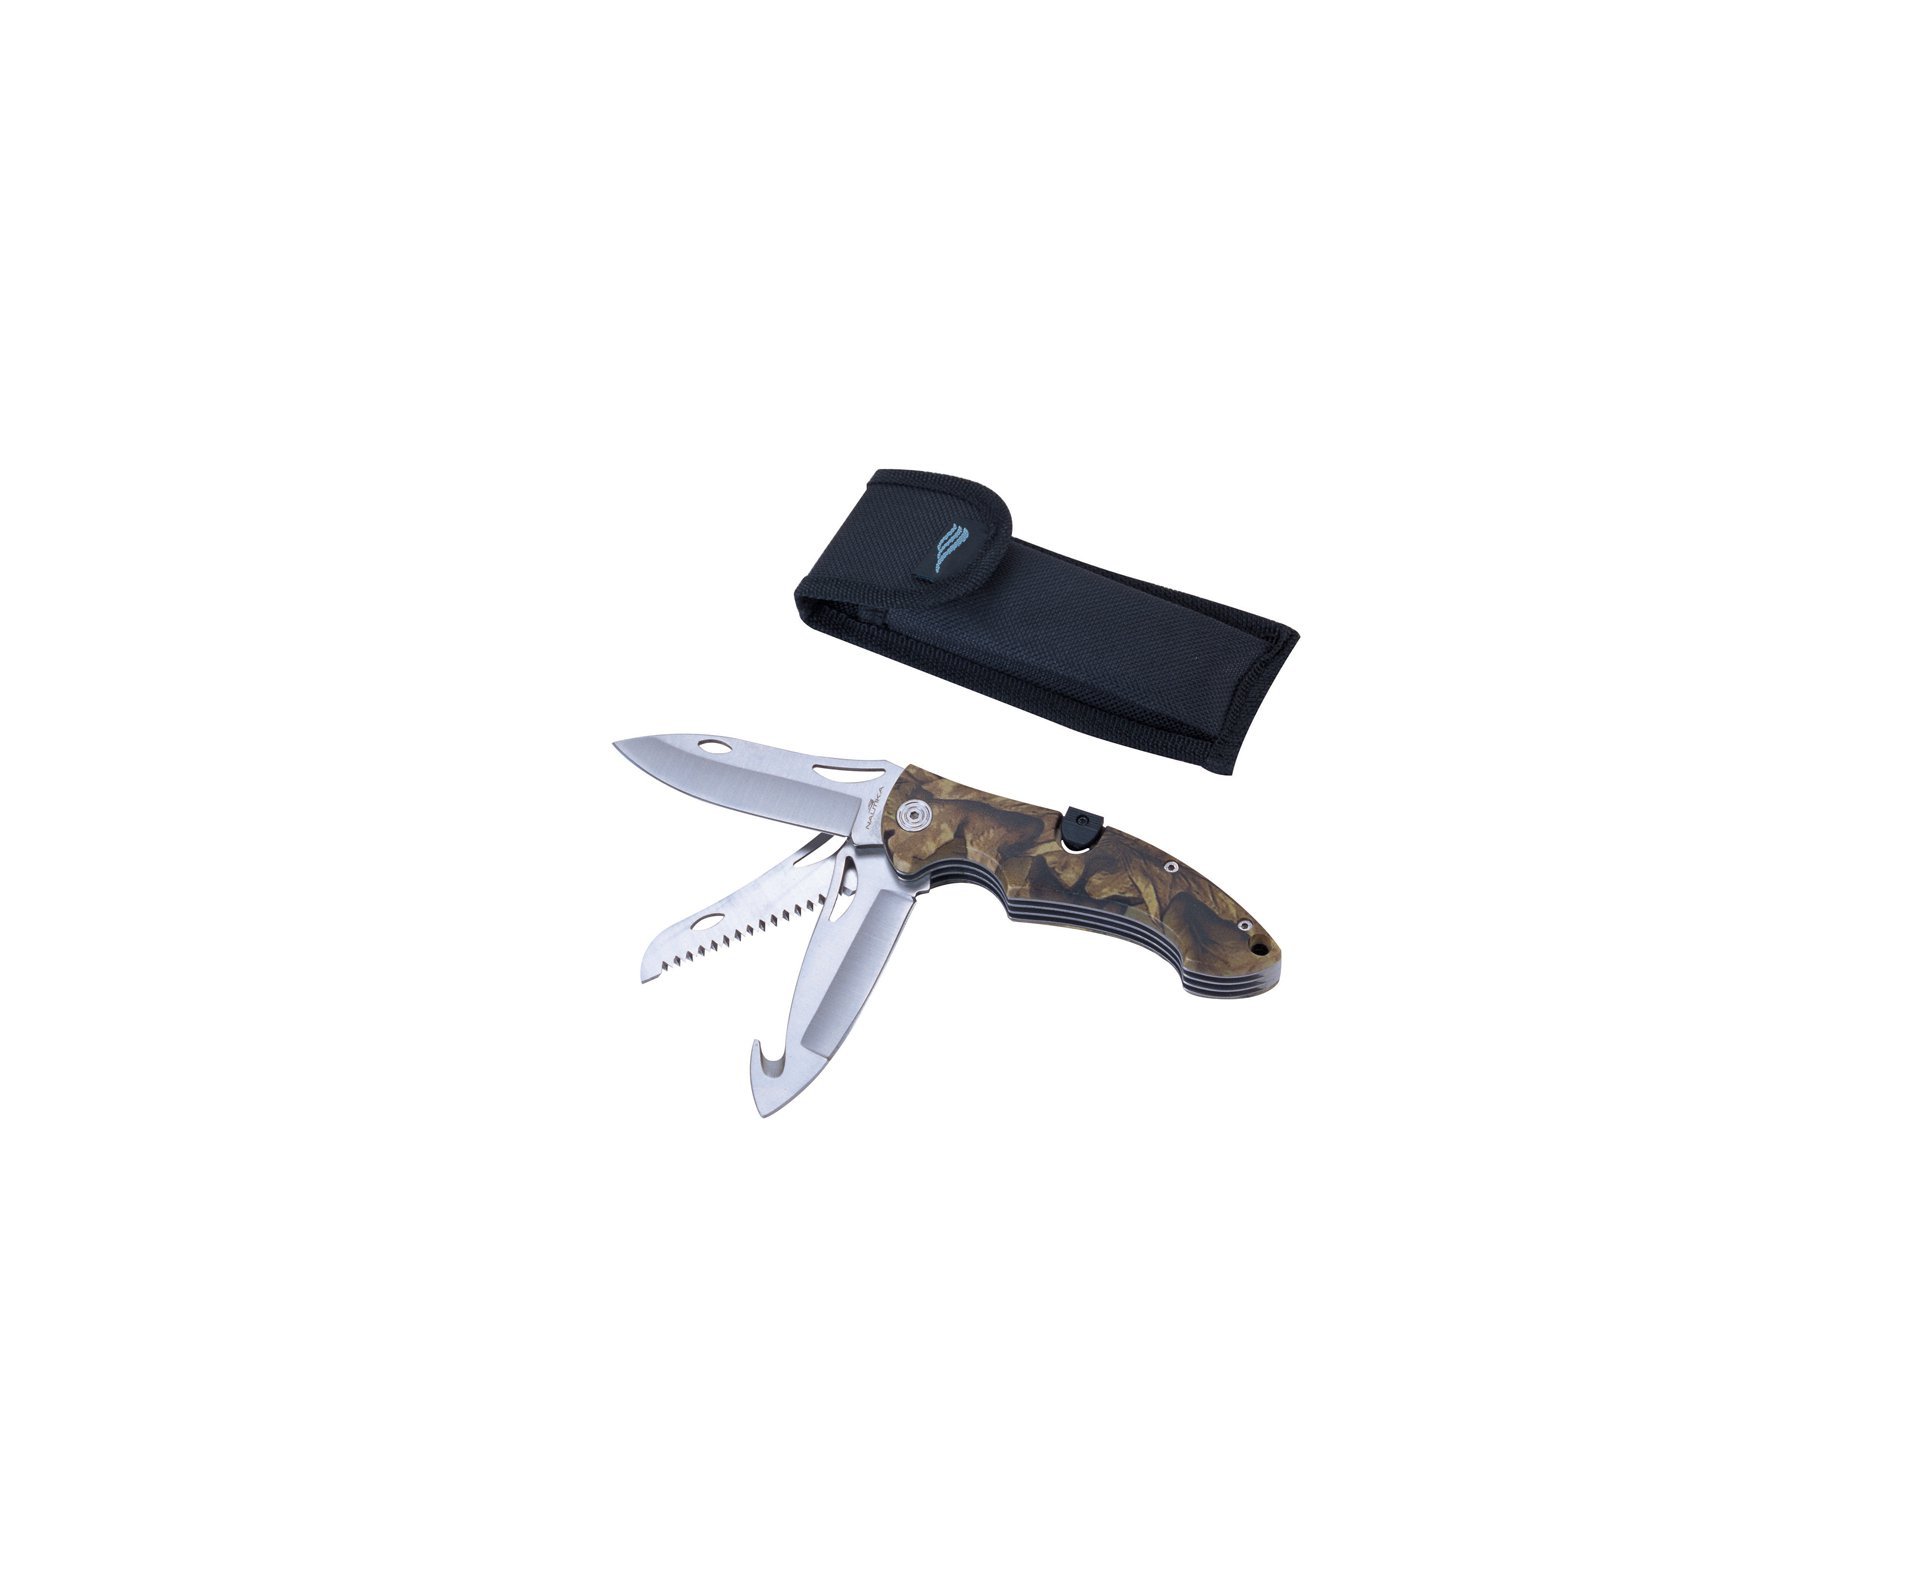 Carabina De Pressão Hatsan Ht 80 Cal 5,5mm + Canivete Selva + Chumbinhos + Capa - Rossi